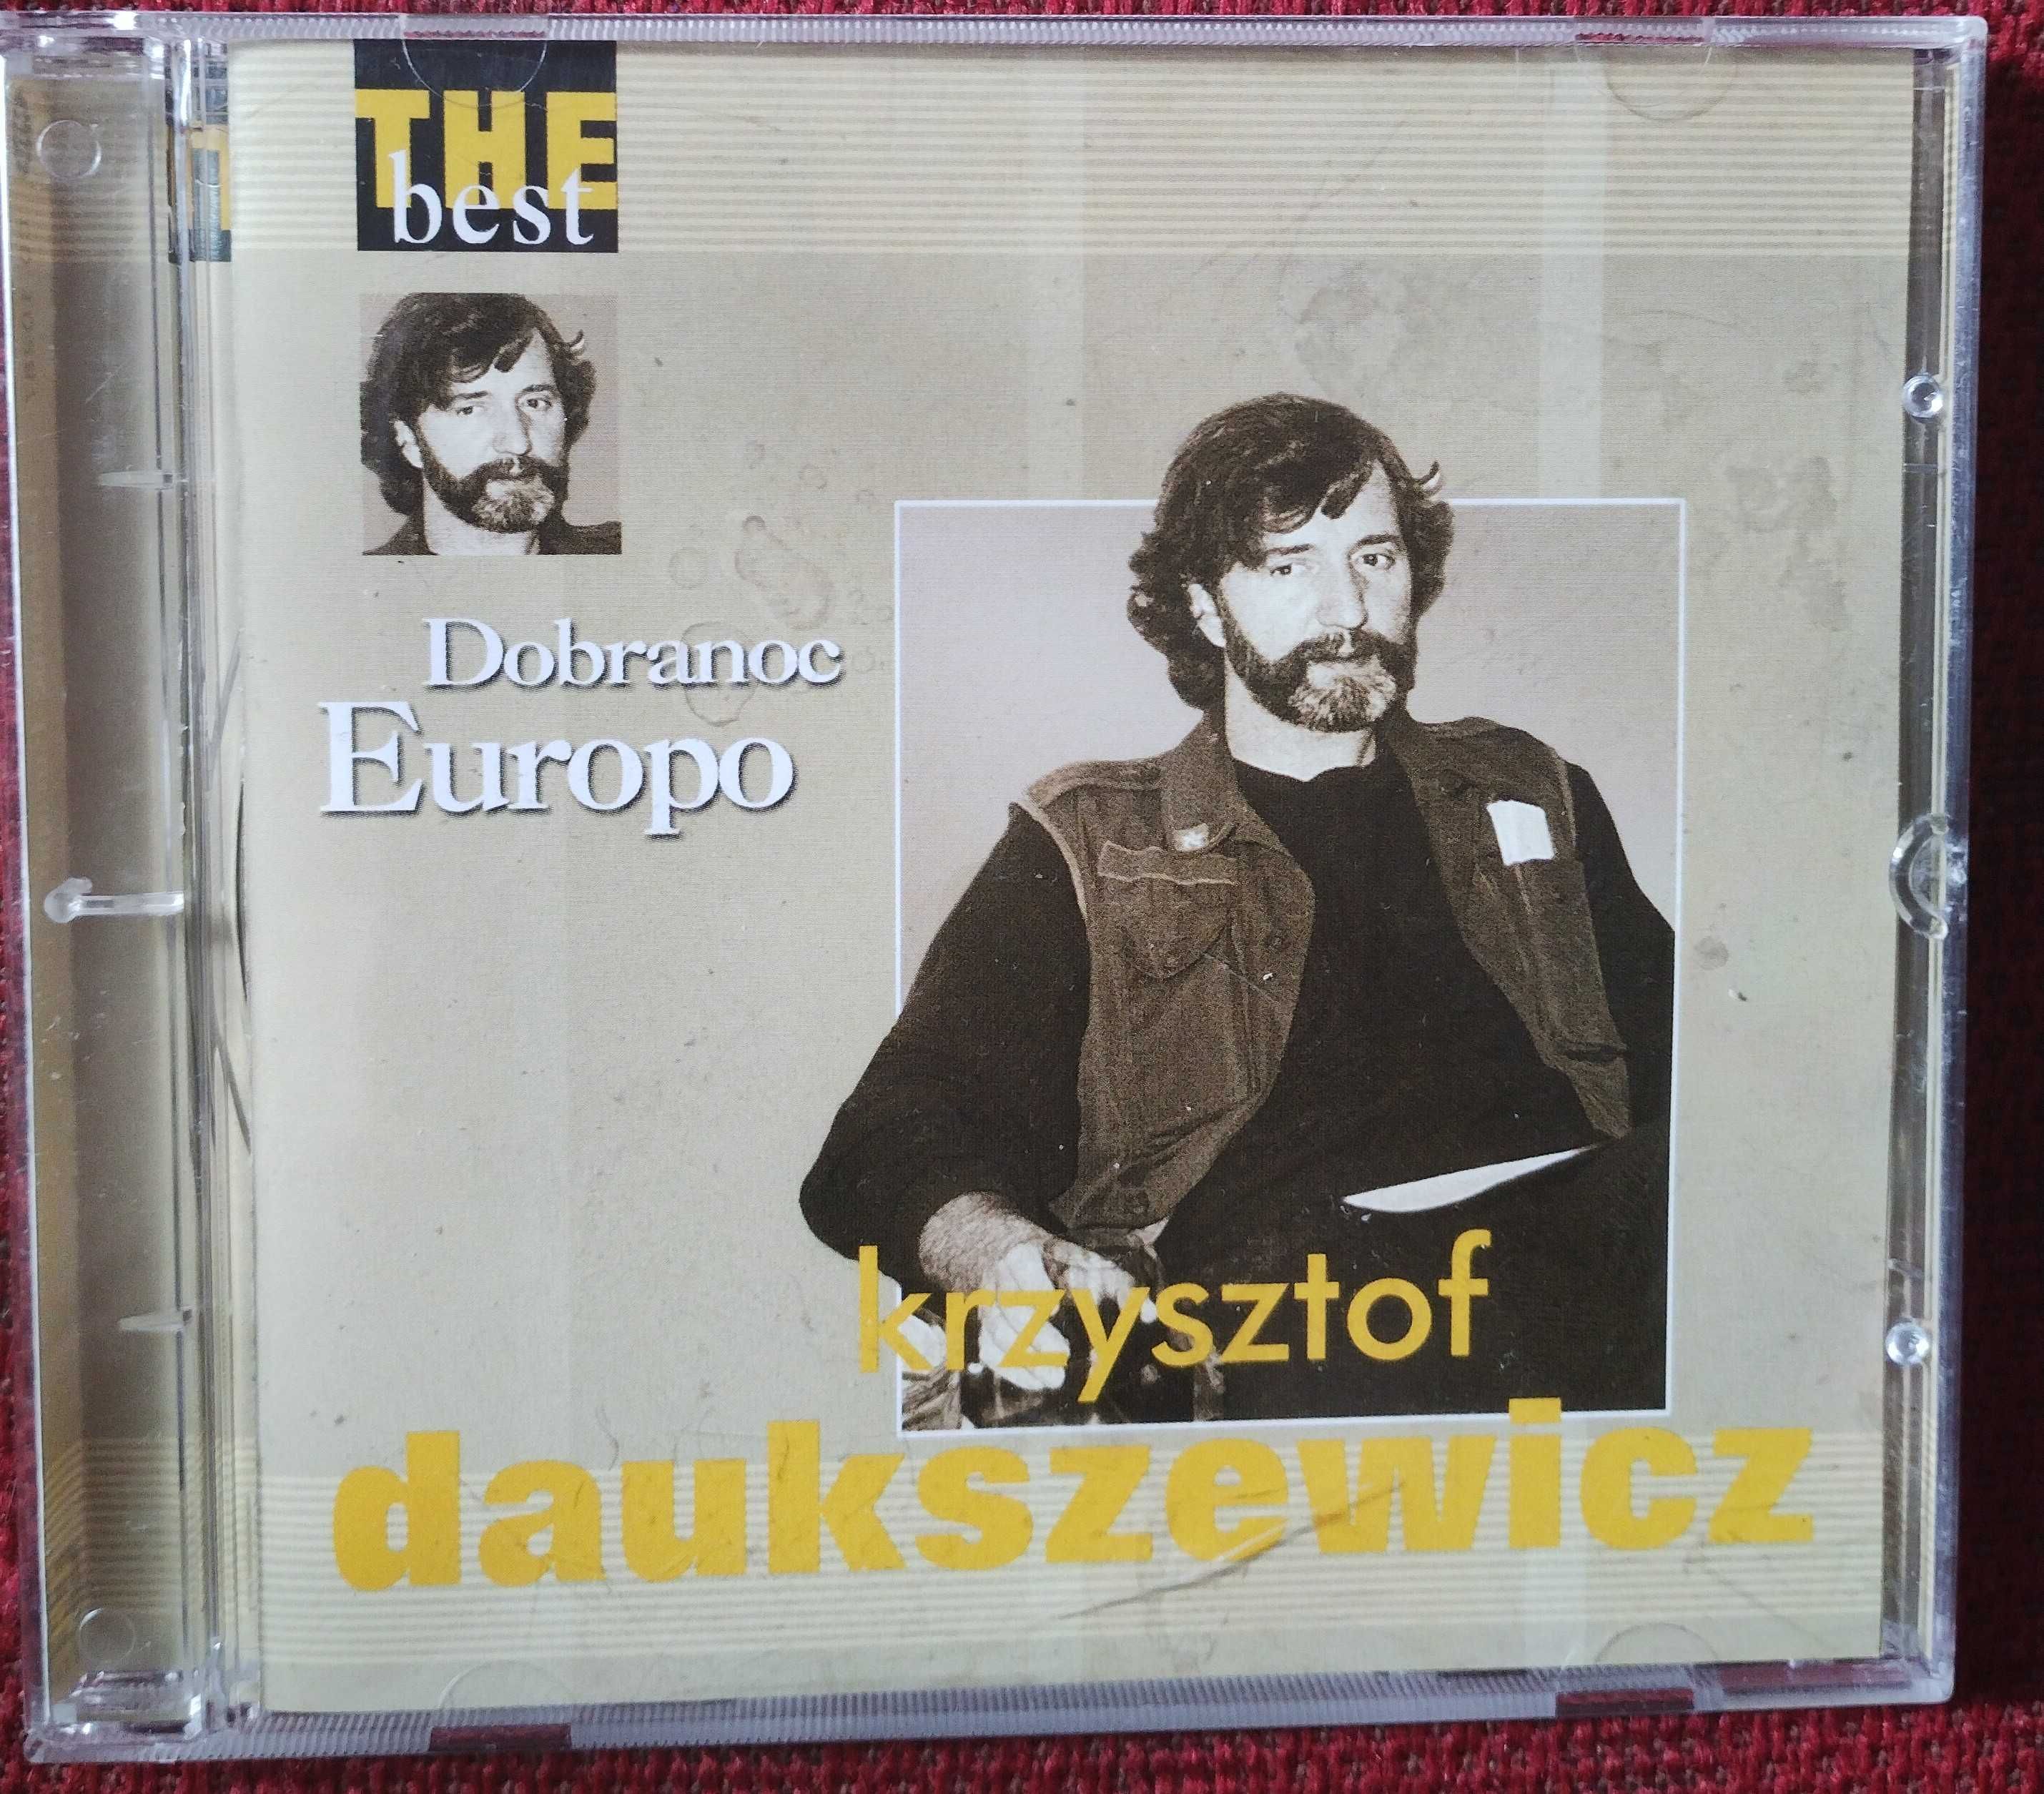 Płyta CD - Krzysztof Daukszewicz